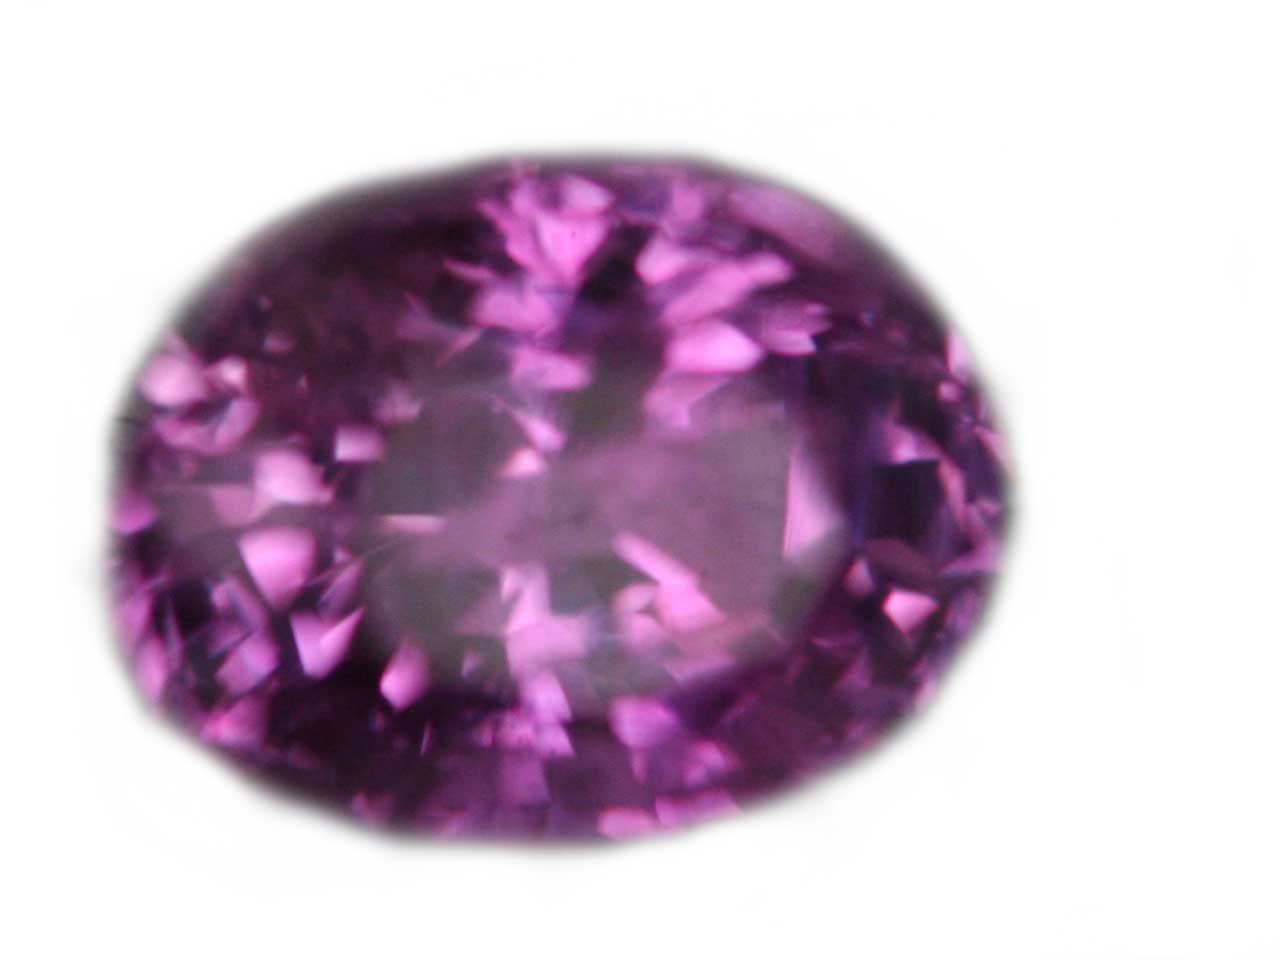 Sri Lanka Pink Oval Sapphire 0.65 carats 5.7x4.2x3.3mm